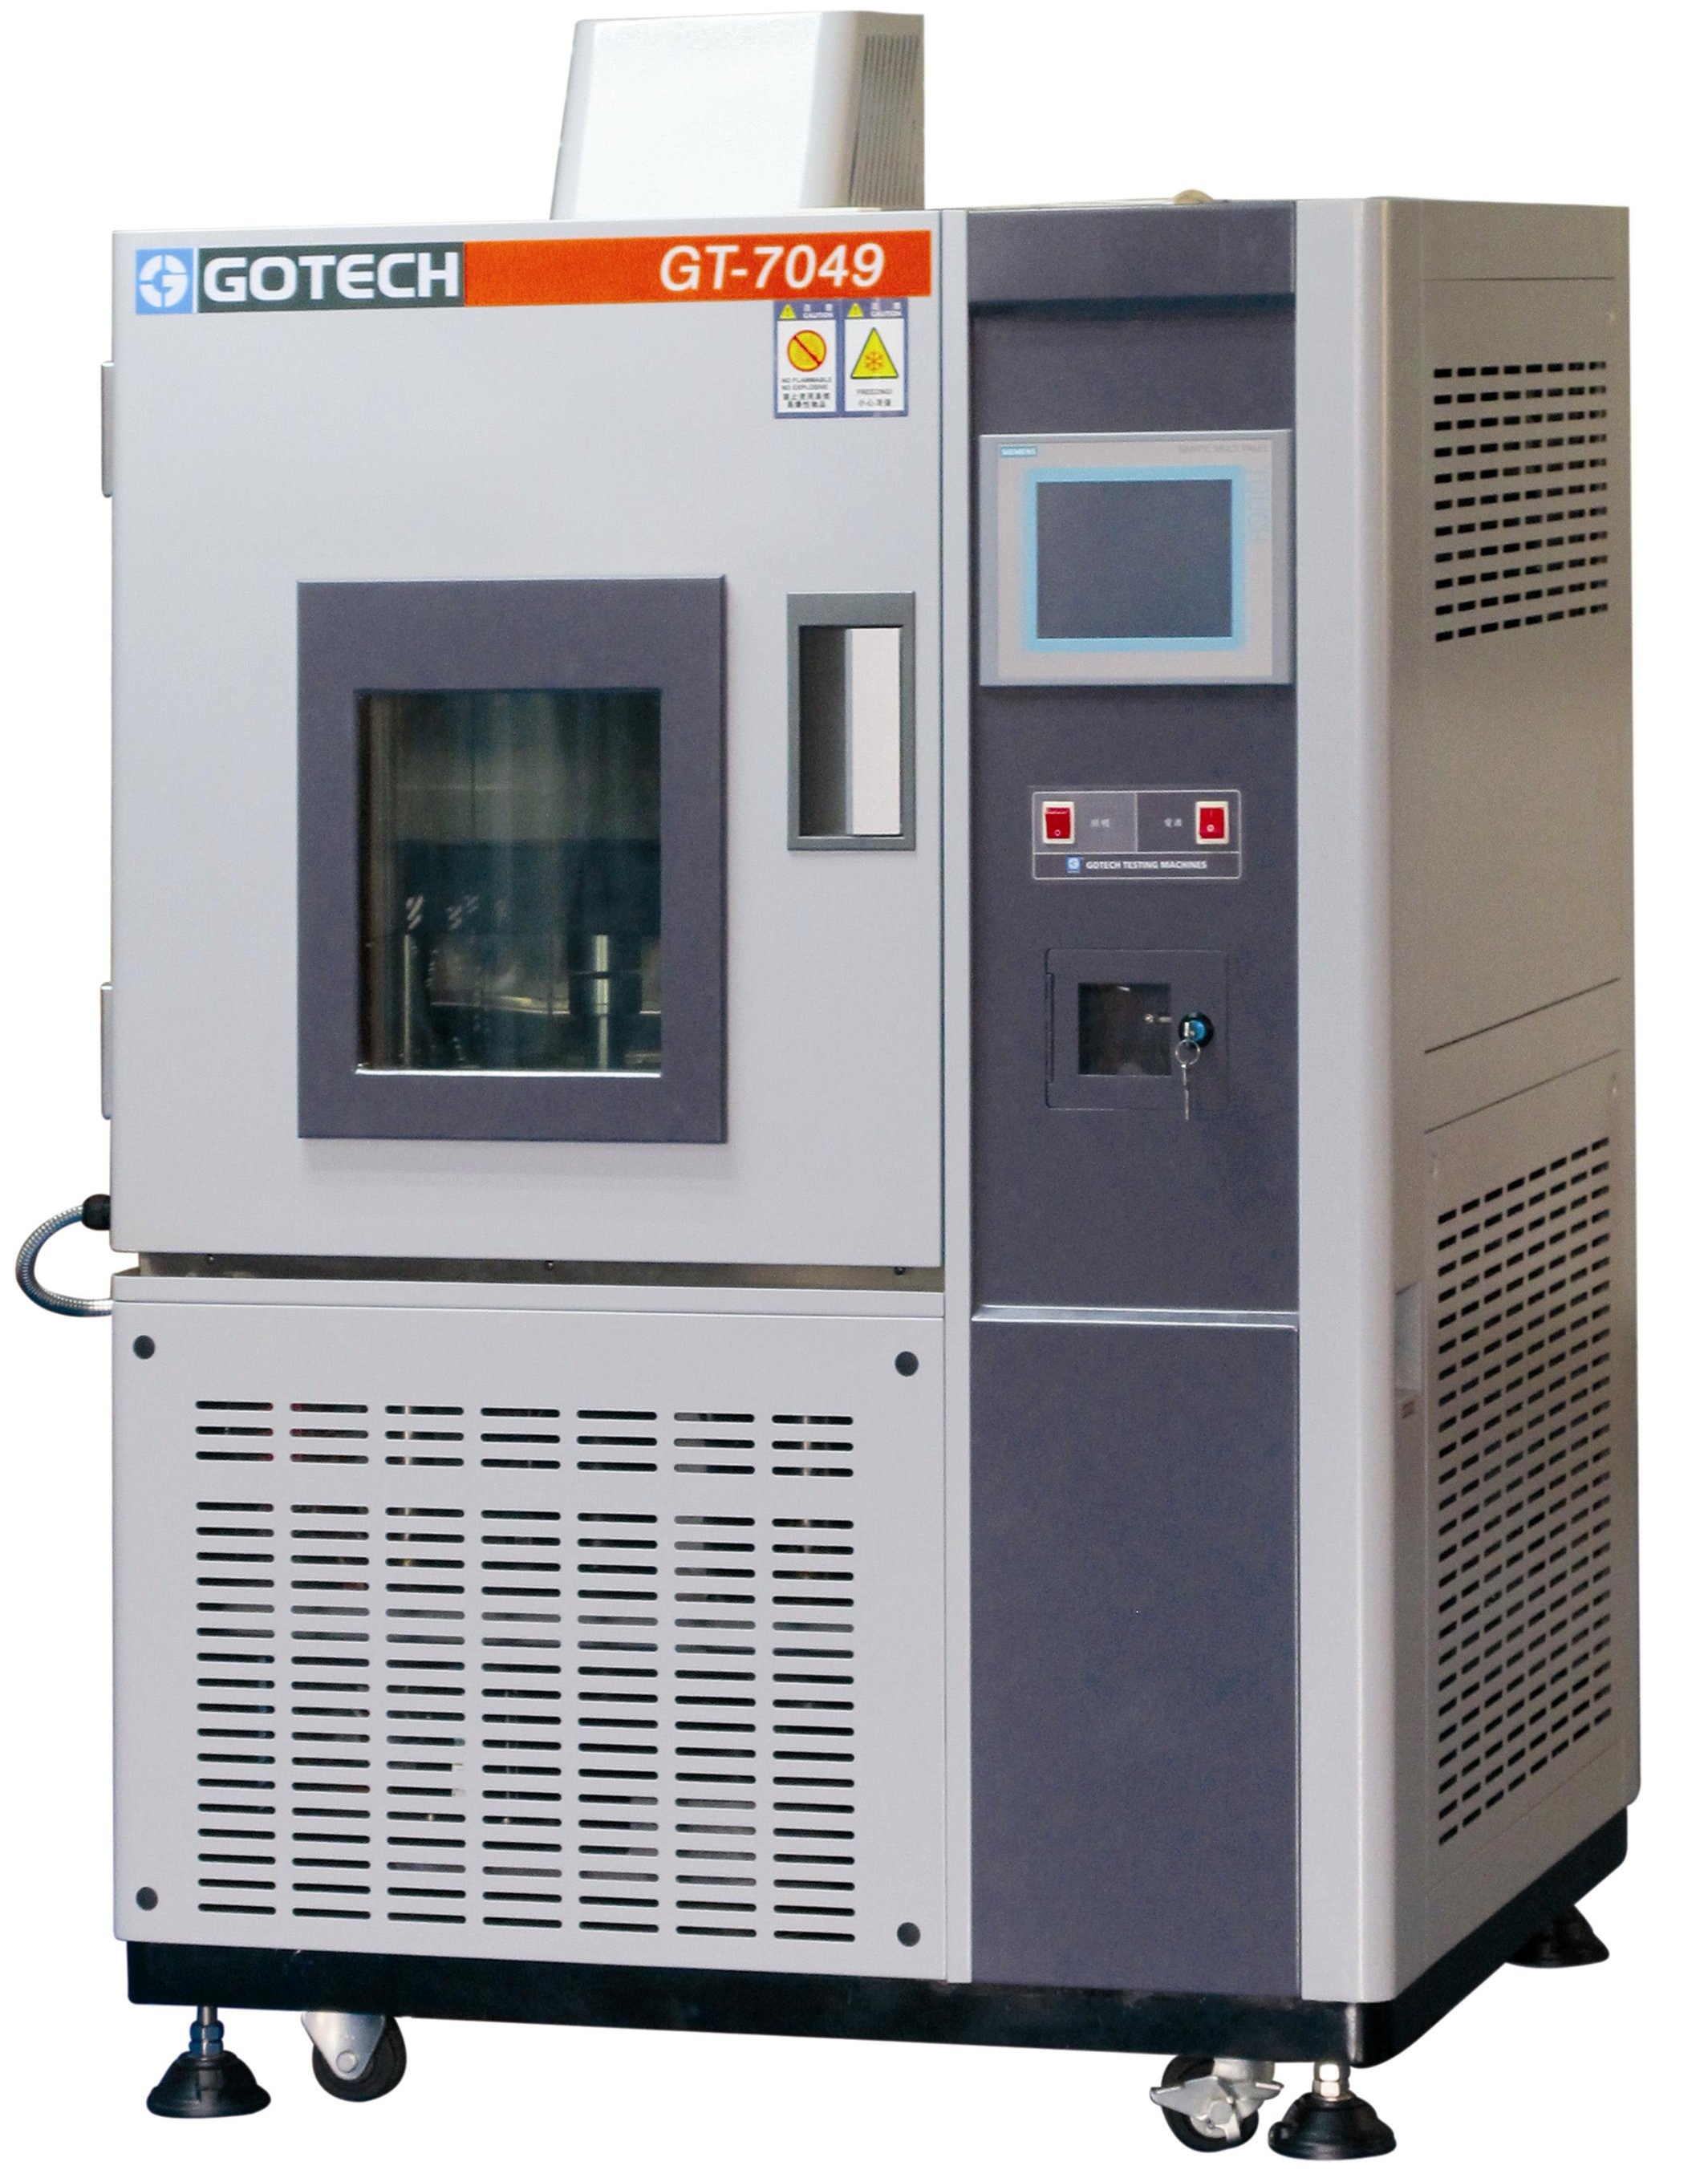 高铁检测仪器GOTECH.橡胶高低温蠕变应力松弛试验机GT-7049-DH